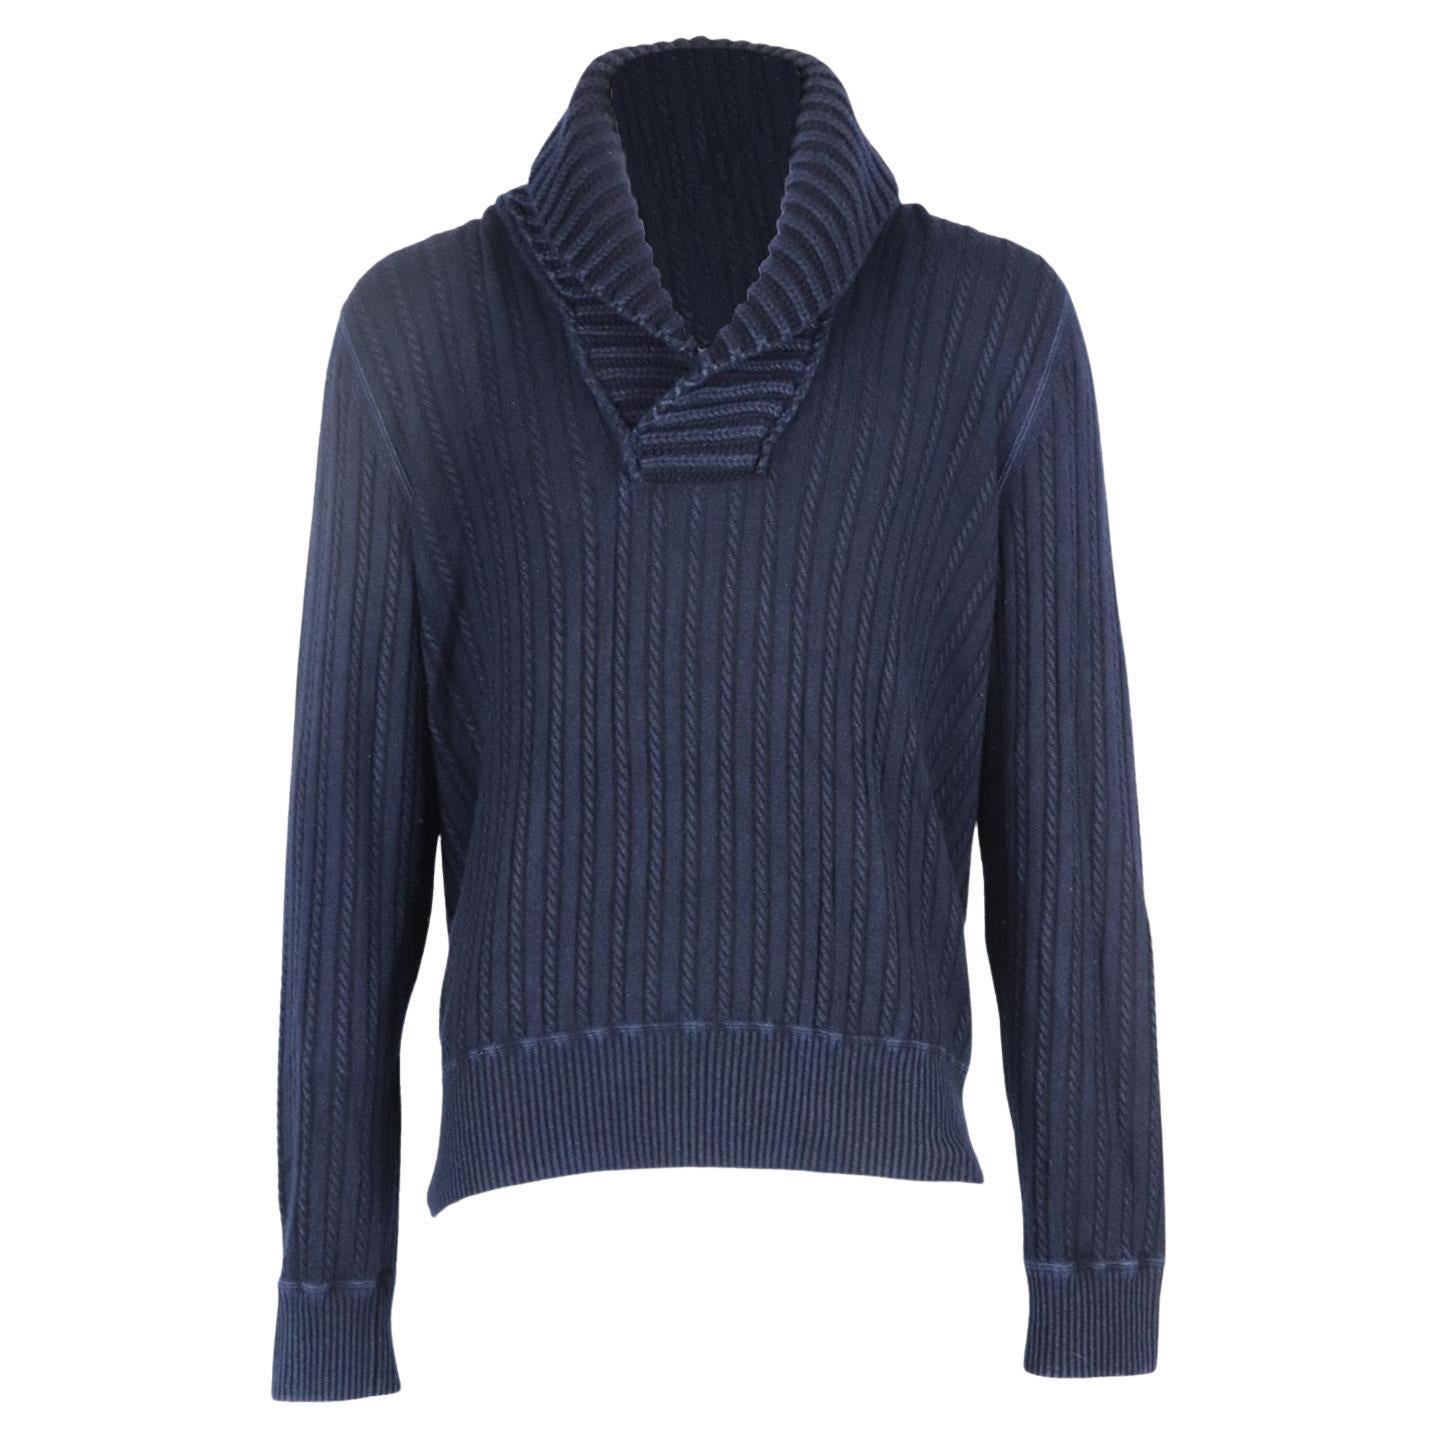 Yves Saint Laurent Men's Cable Knit Cashmere Sweater Xlarge